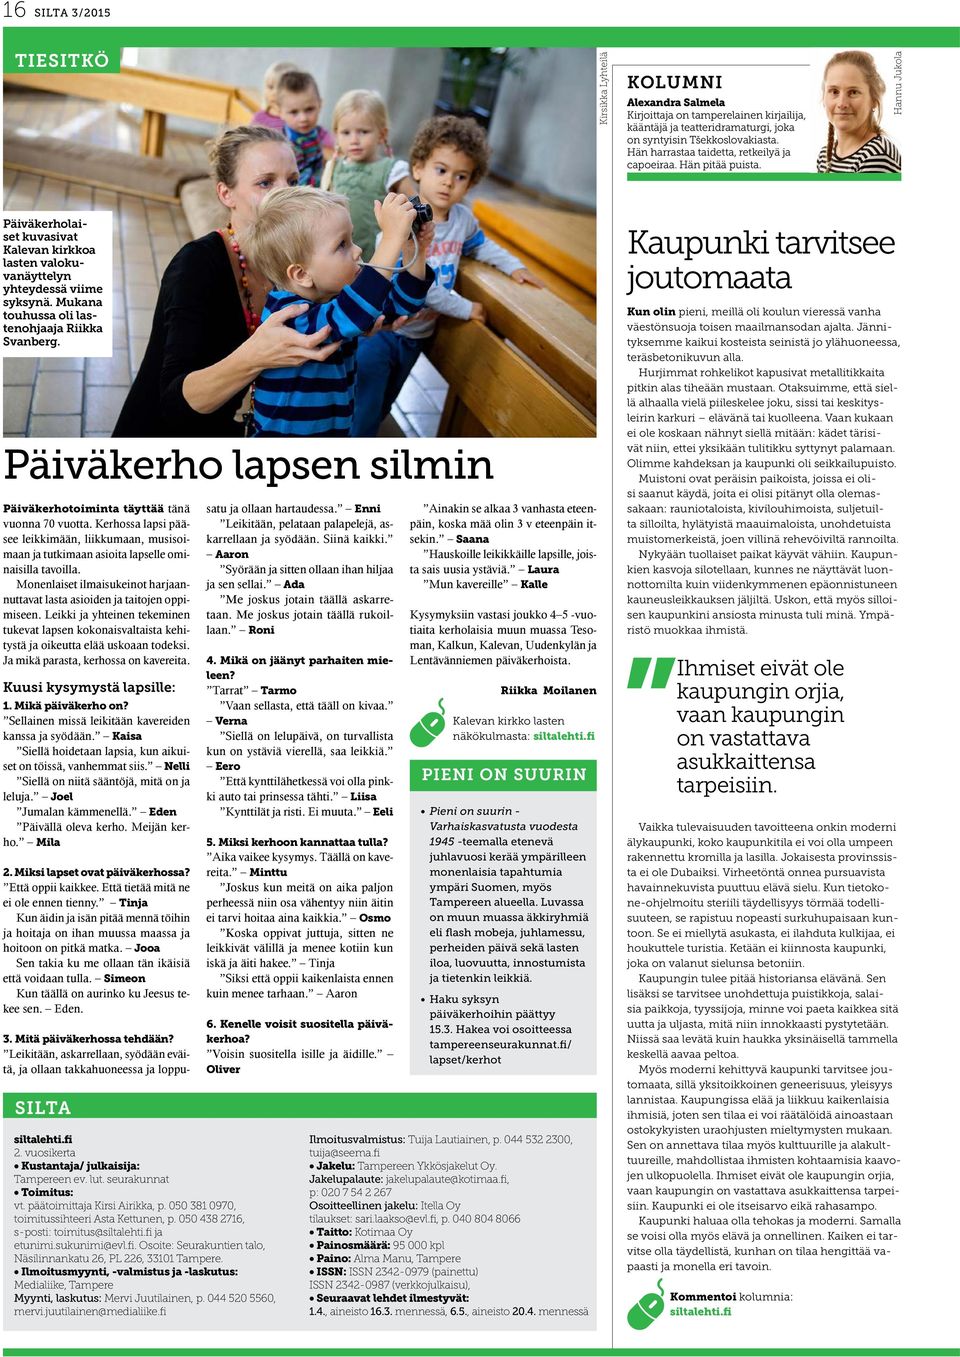 Mukana touhussa oli lastenohjaaja Riikka Svanberg. Päiväkerho lapsen silmin Päiväkerhotoiminta täyttää tänä vuonna 70 vuotta.